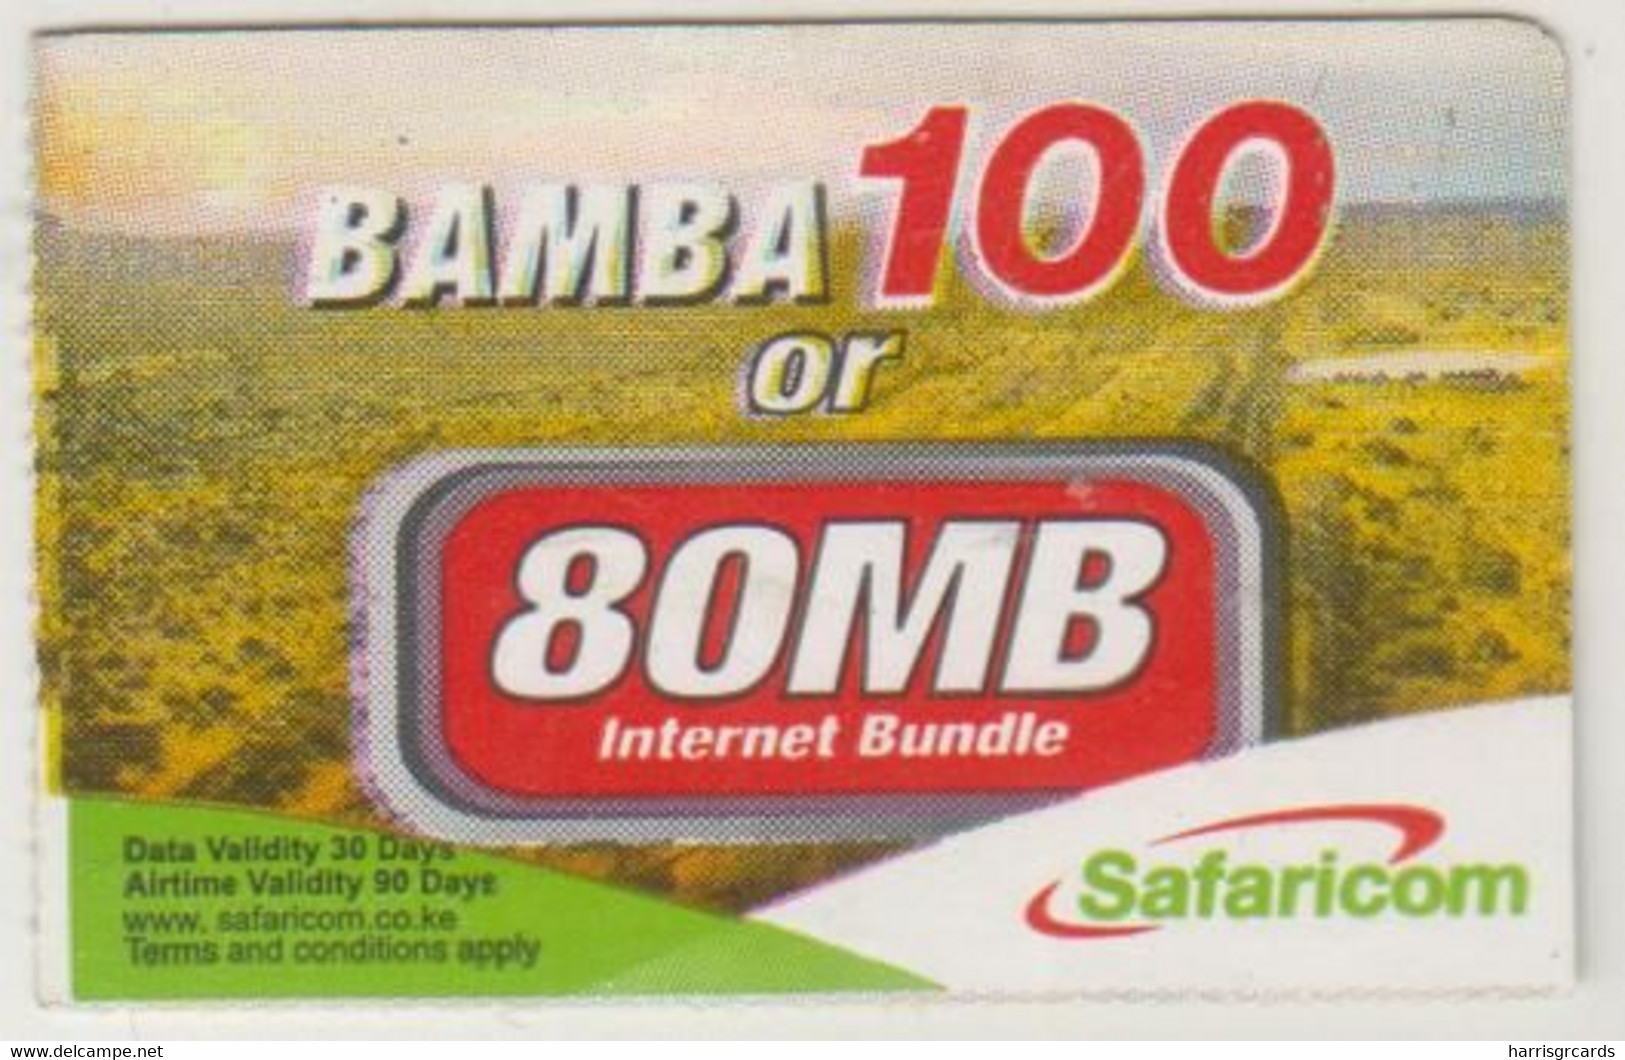 KENYA - BAMBA 100 (1/4 Size), Safaricom Card , Expiry Date:15/02/2015, Used - Kenya